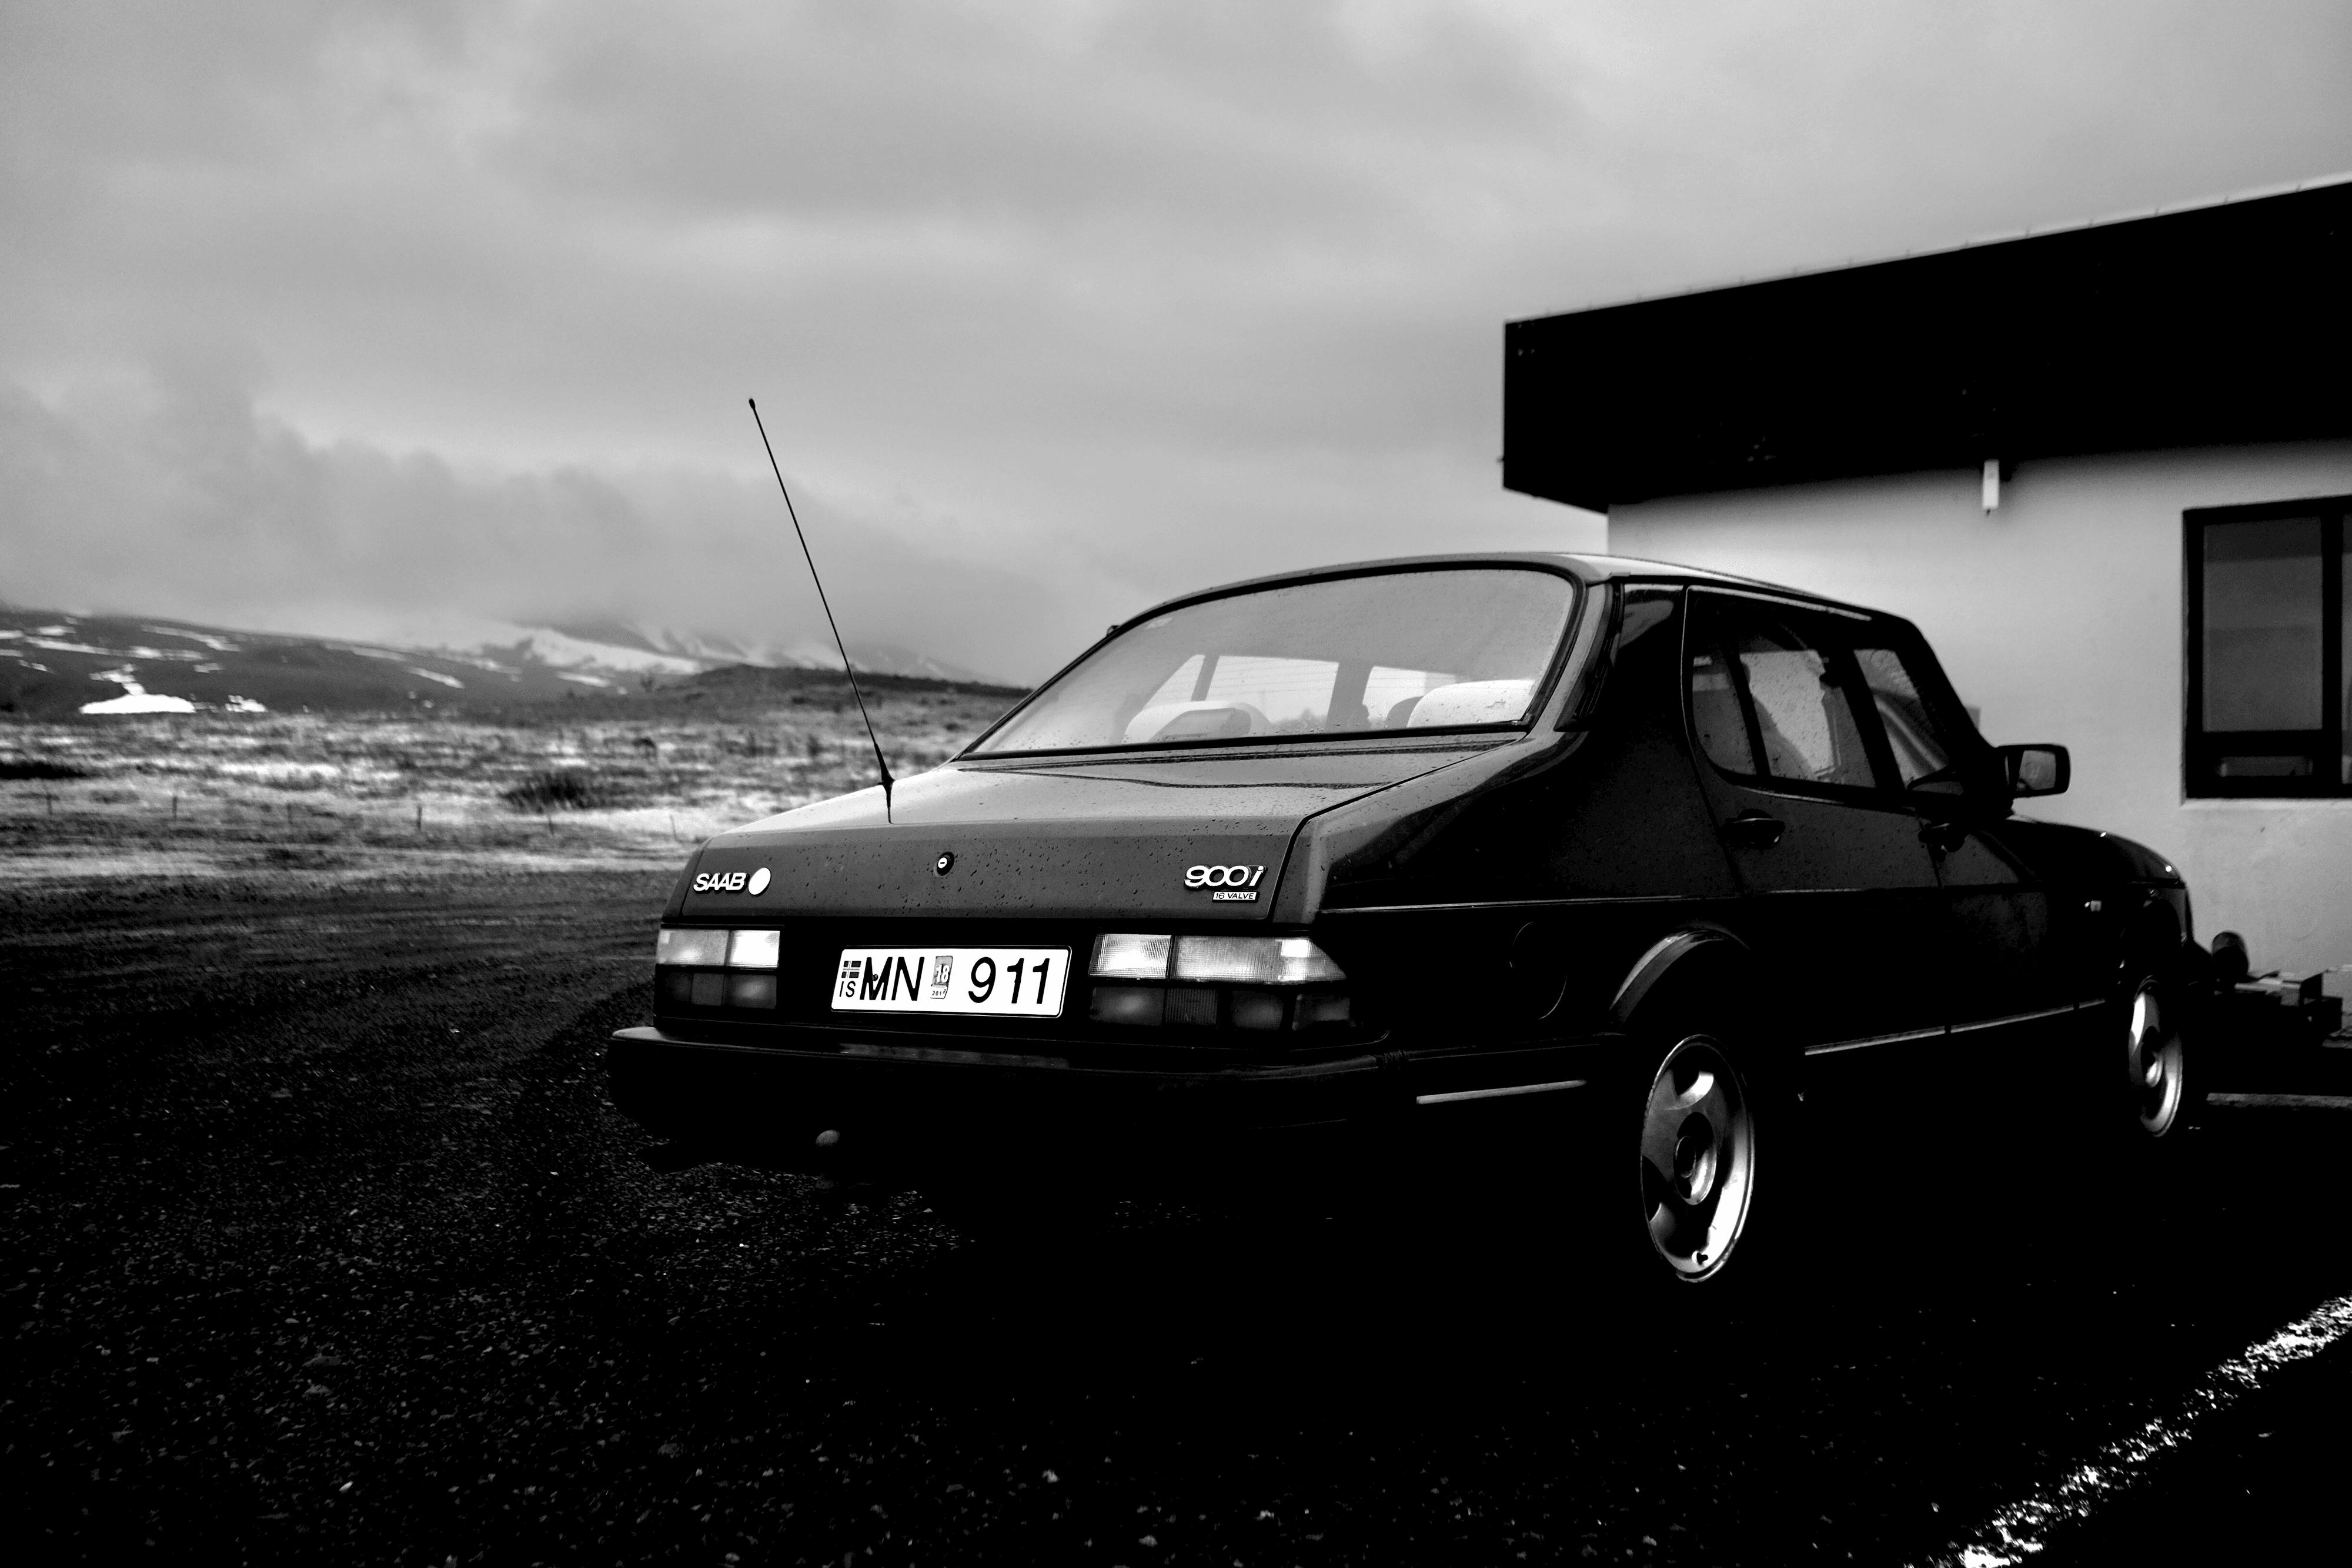 Edition - Saab 900i 16 Valve